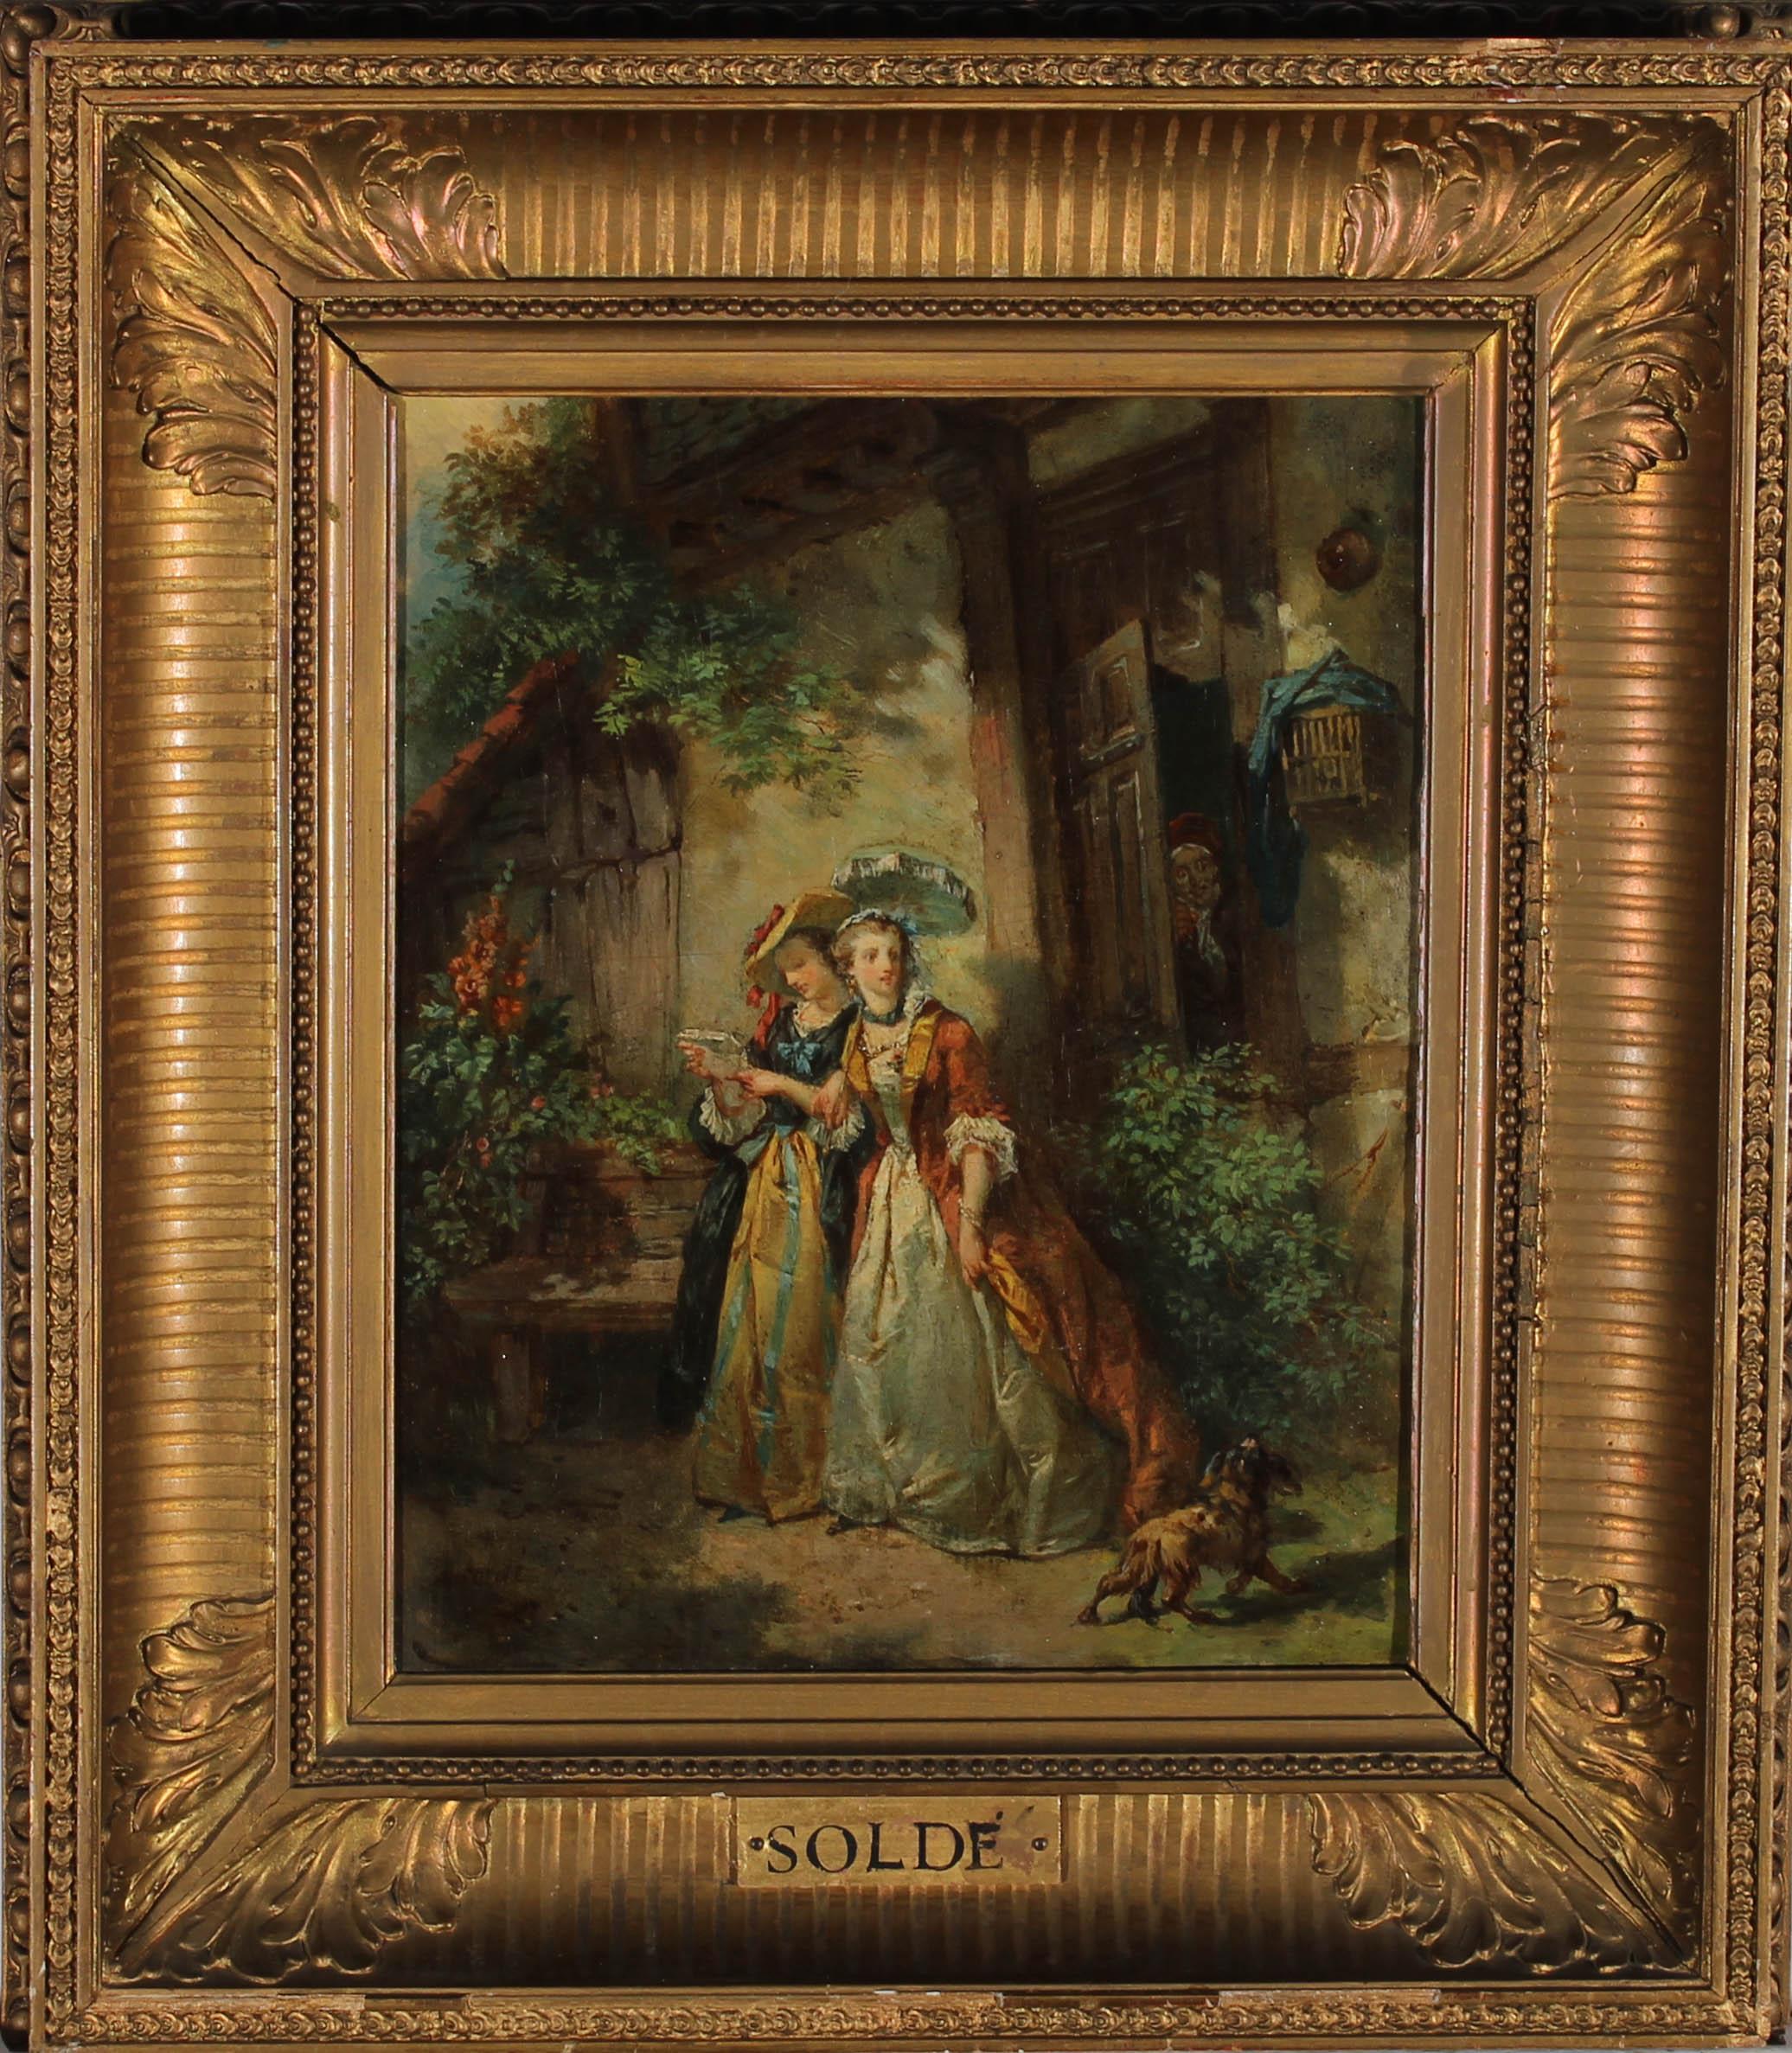 Ein exquisites Beispiel für das Werk des französischen Genremalers Alexandre Soldé (1822-1893). Die Szene zeigt zwei Damen der Gesellschaft, gekleidet in eleganter Kleidung des späten 18. Sie spazieren mit ihrem Hund an einer baufälligen Hütte